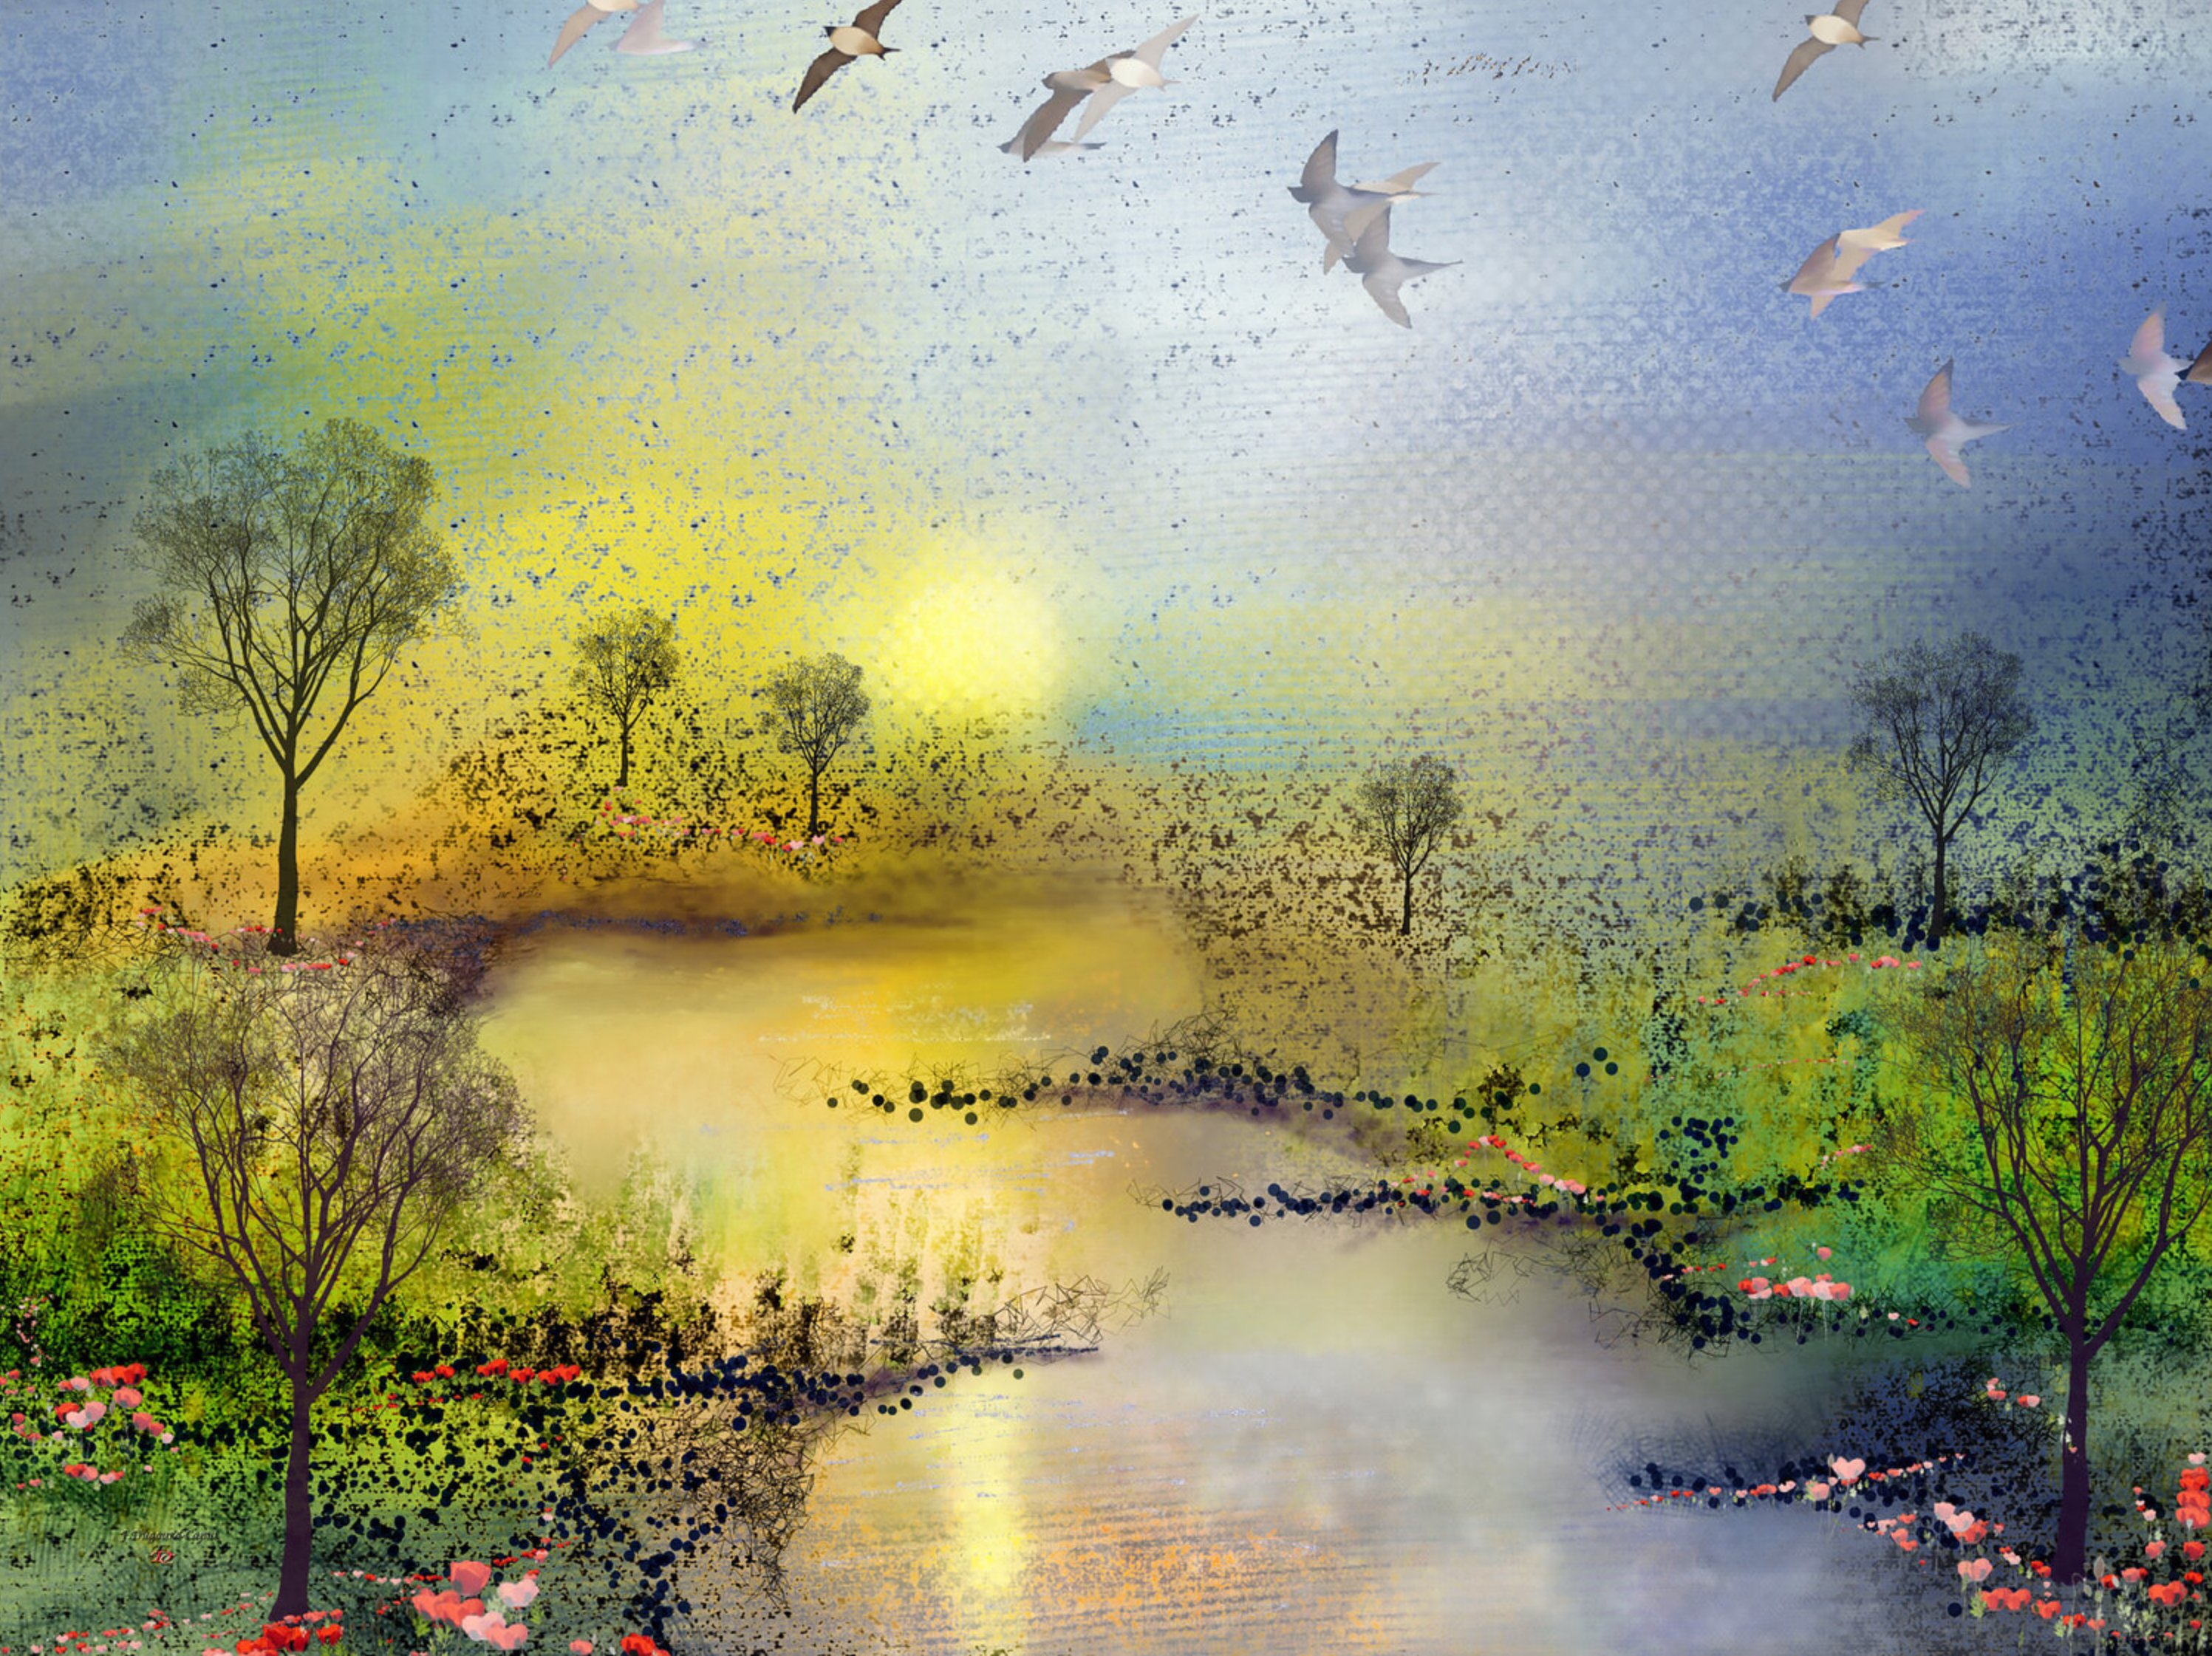 El cuadro abstracto "Les coquelicots" de Françoise Dugourd-Caput representa un paisaje primaveral imaginario lleno de dulzura, mostrando un río que serpentea entre dos praderas verdes bordeadas de amapolas al atardecer.